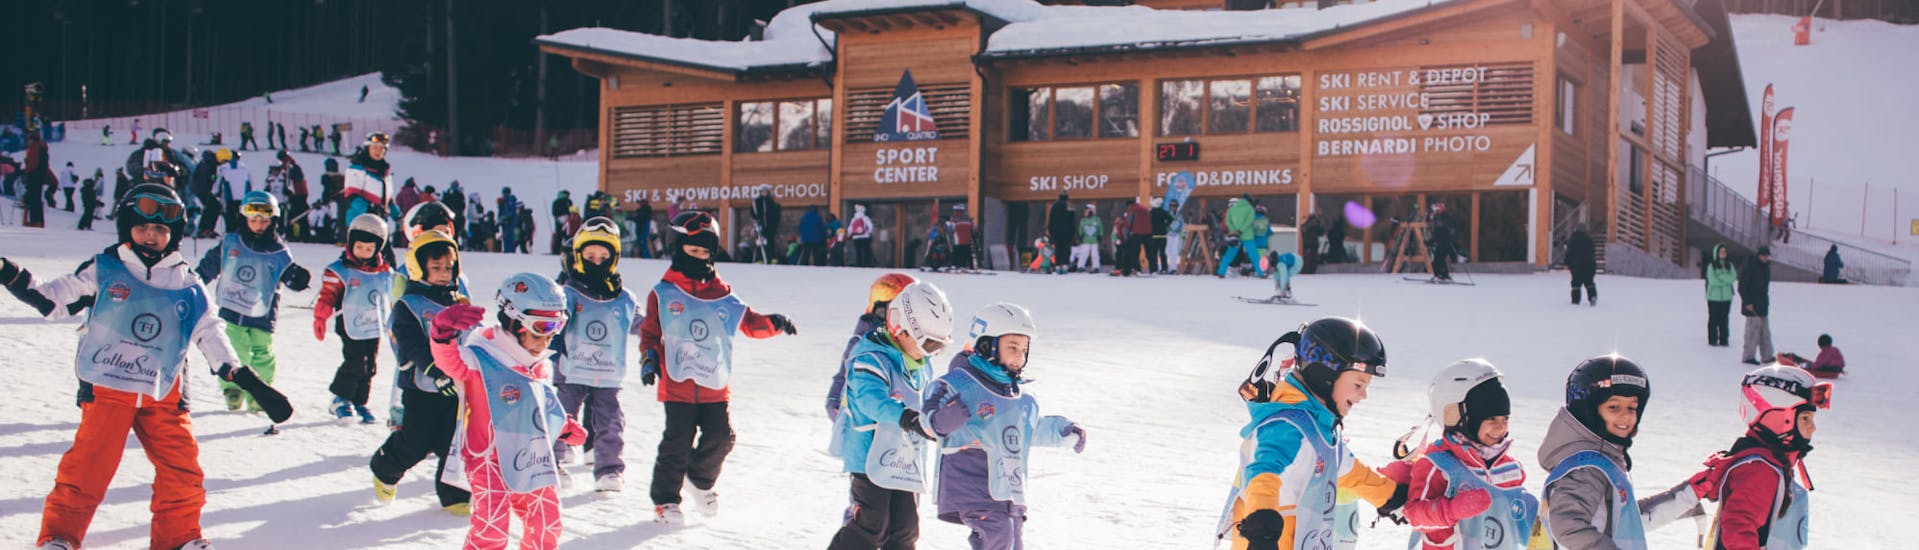 Clases de esquí para niños a partir de 3 años para principiantes.